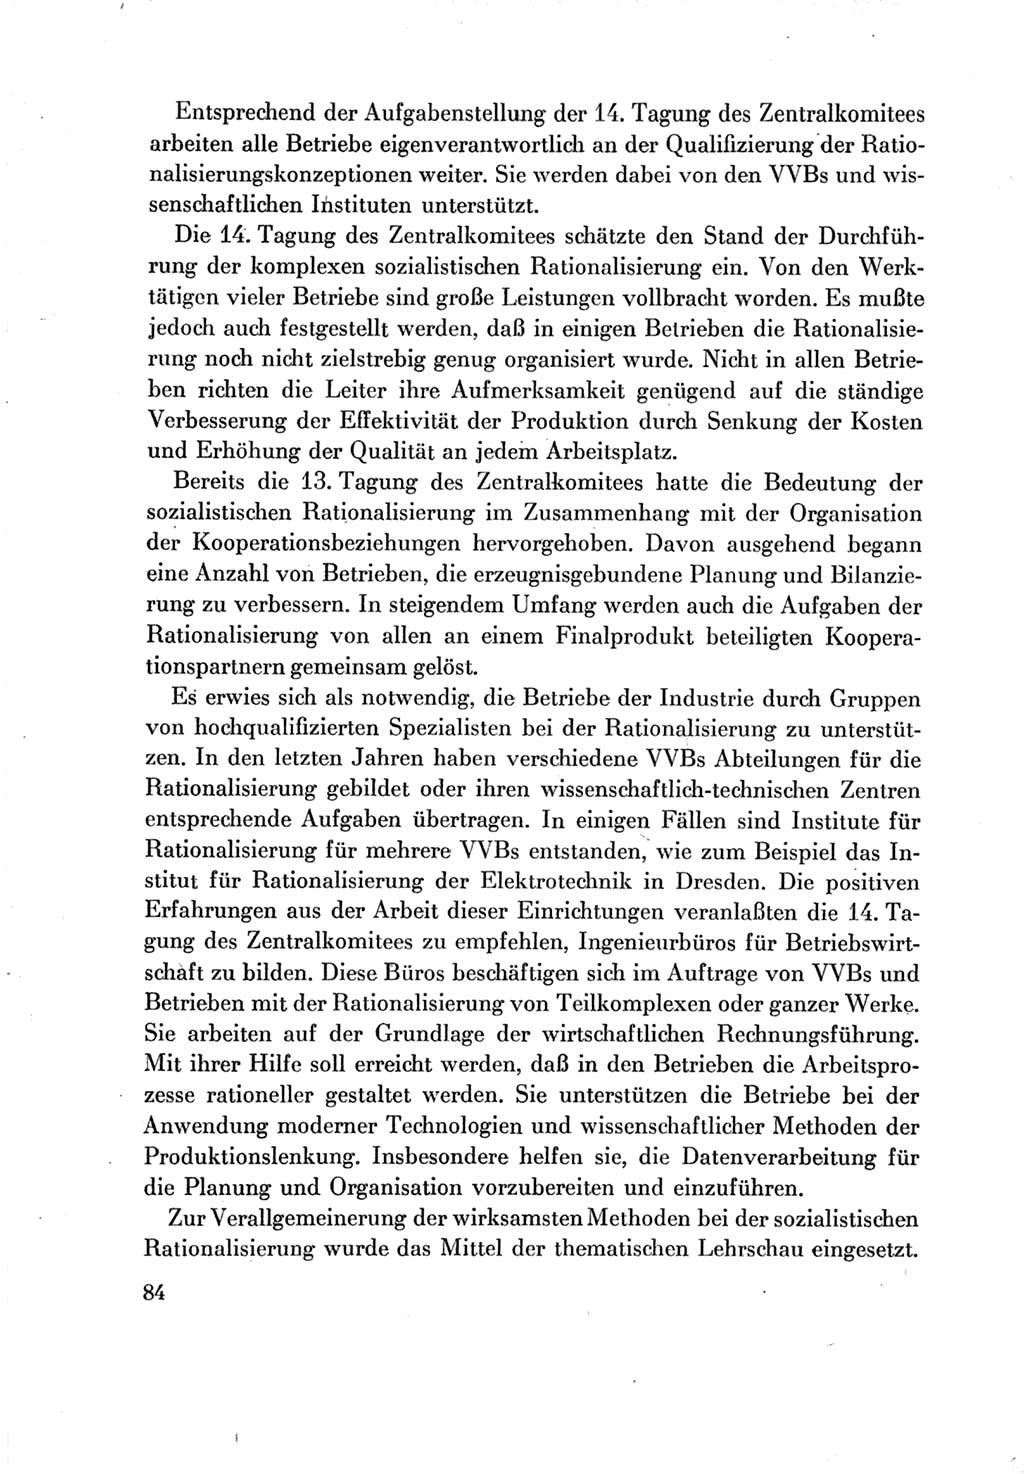 Protokoll der Verhandlungen des Ⅶ. Parteitages der Sozialistischen Einheitspartei Deutschlands (SED) [Deutsche Demokratische Republik (DDR)] 1967, Band Ⅳ, Seite 84 (Prot. Verh. Ⅶ. PT SED DDR 1967, Bd. Ⅳ, S. 84)